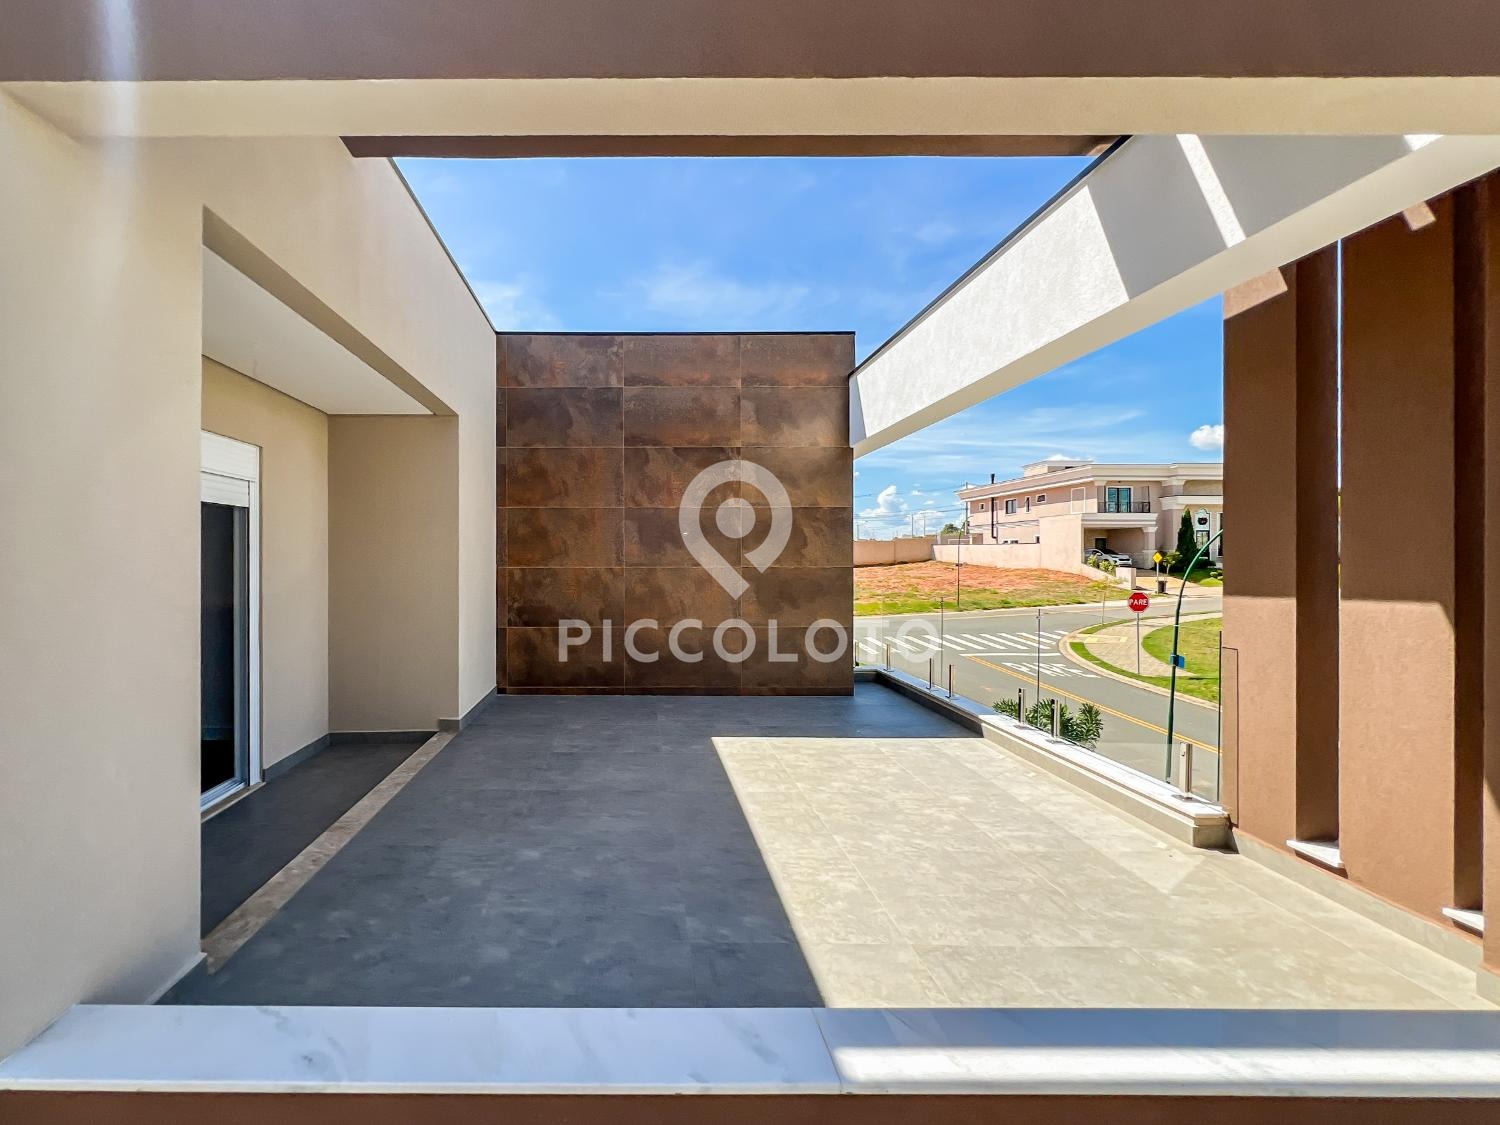 Piccoloto -Casa à venda no Loteamento Residencial Arborais em Campinas